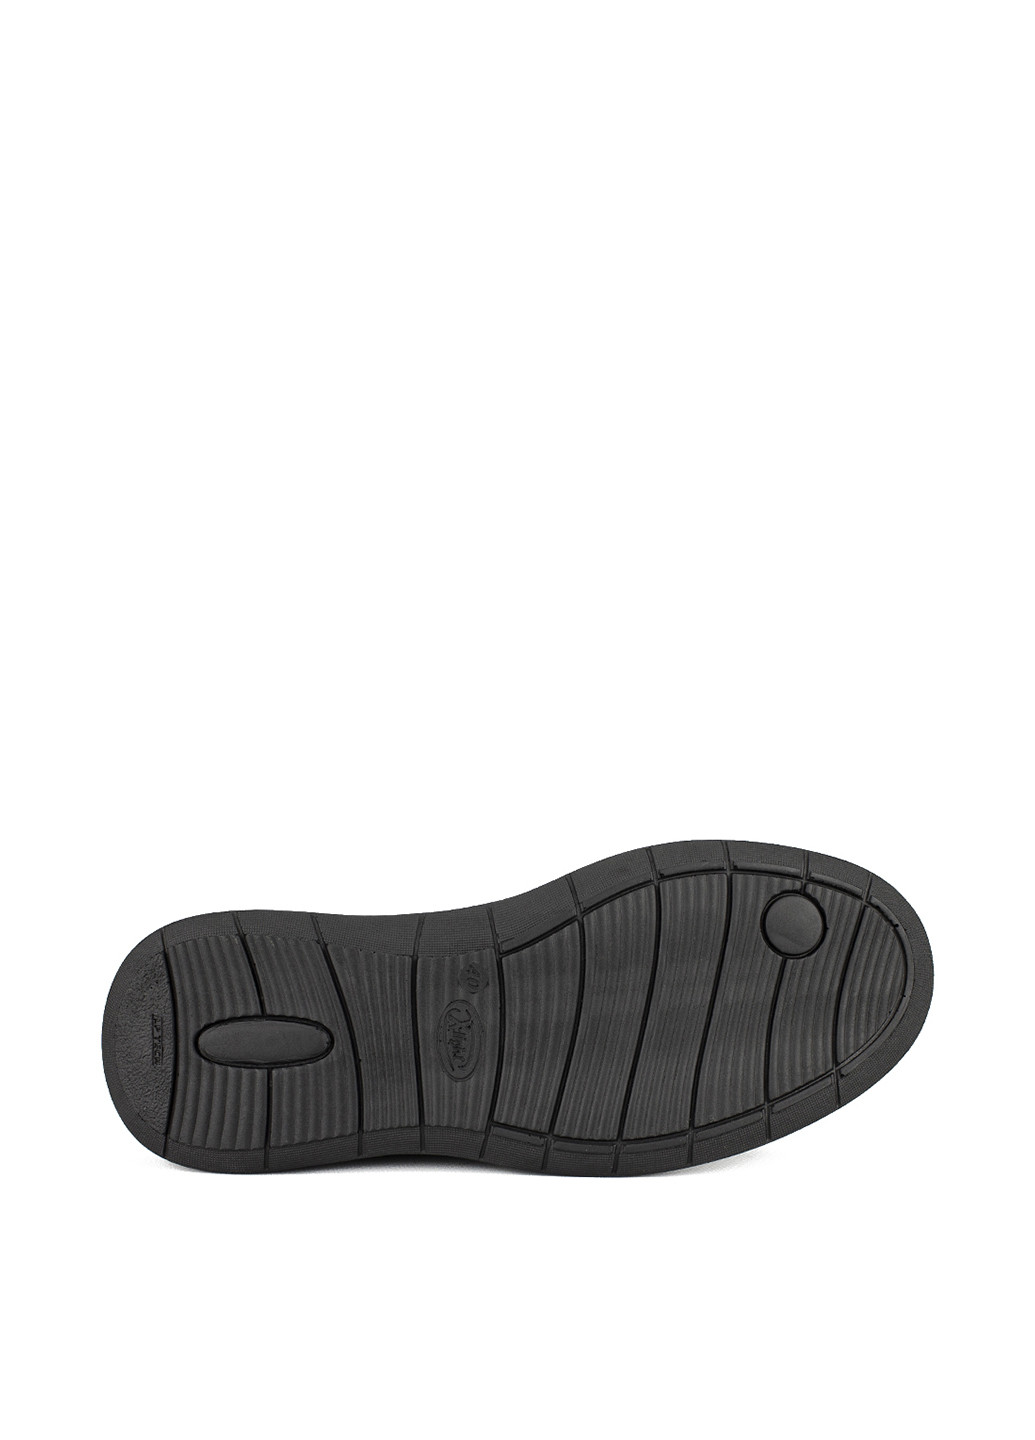 Черные кэжуал туфли Esco на шнурках